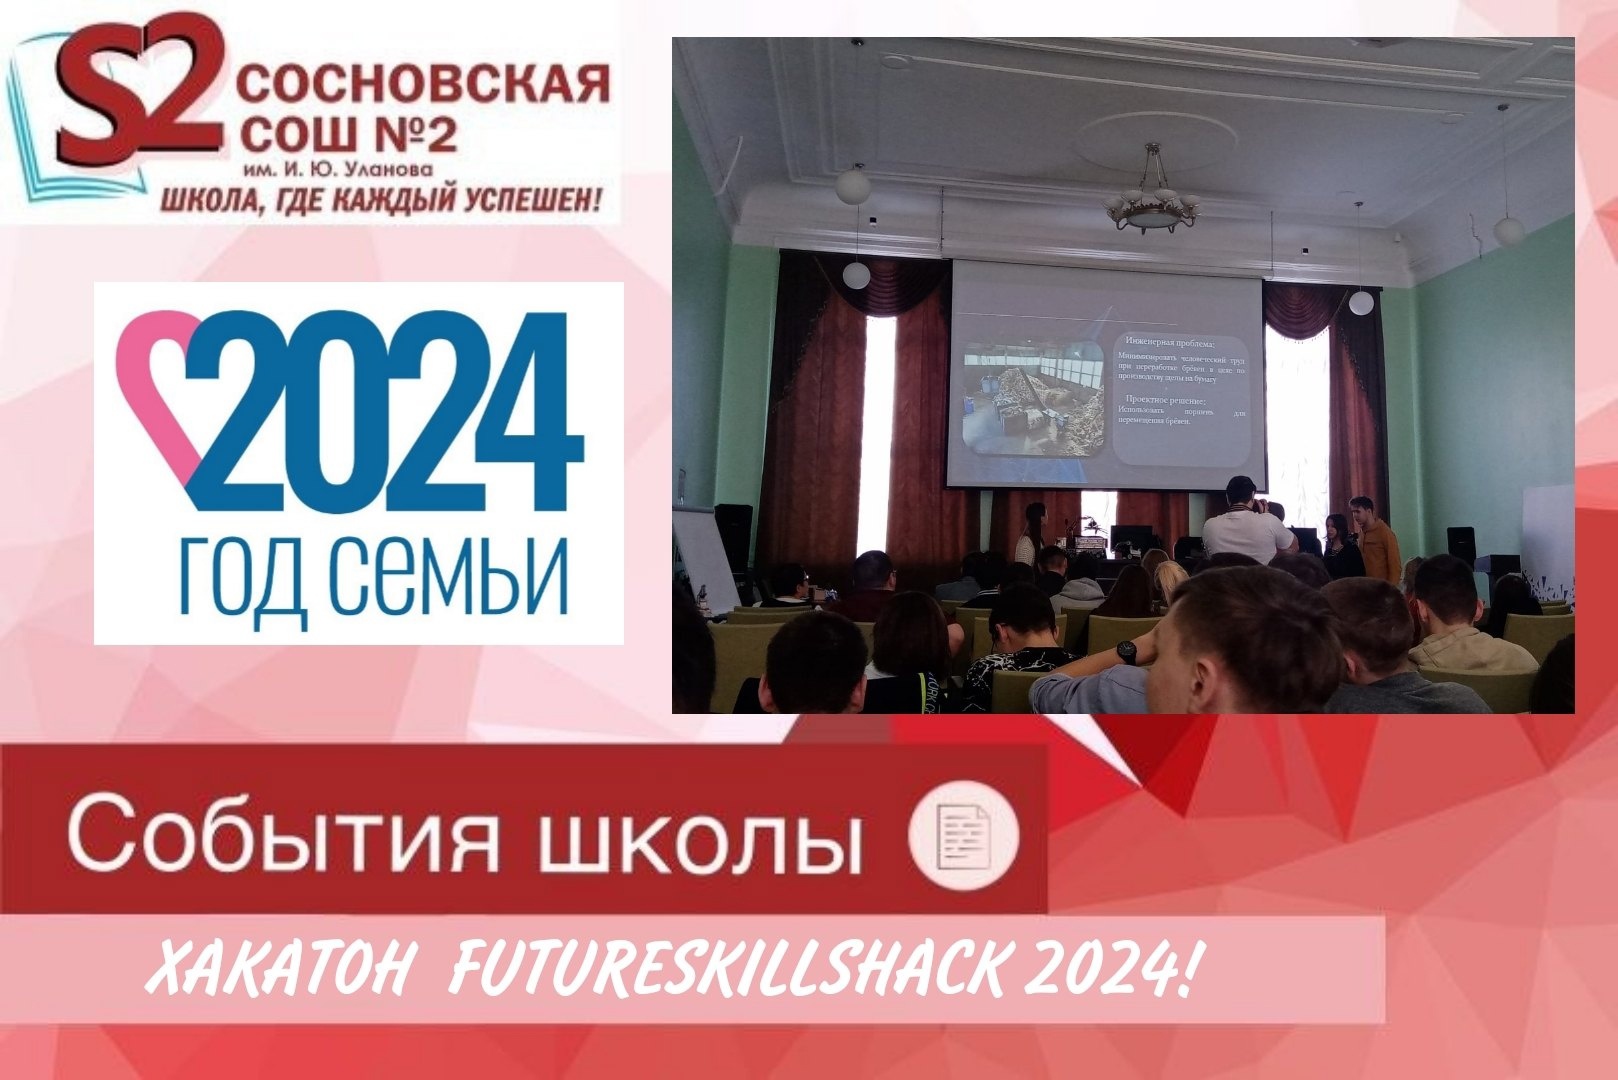 ХАКАТОН FUTURESKILLSHACK 2024!.